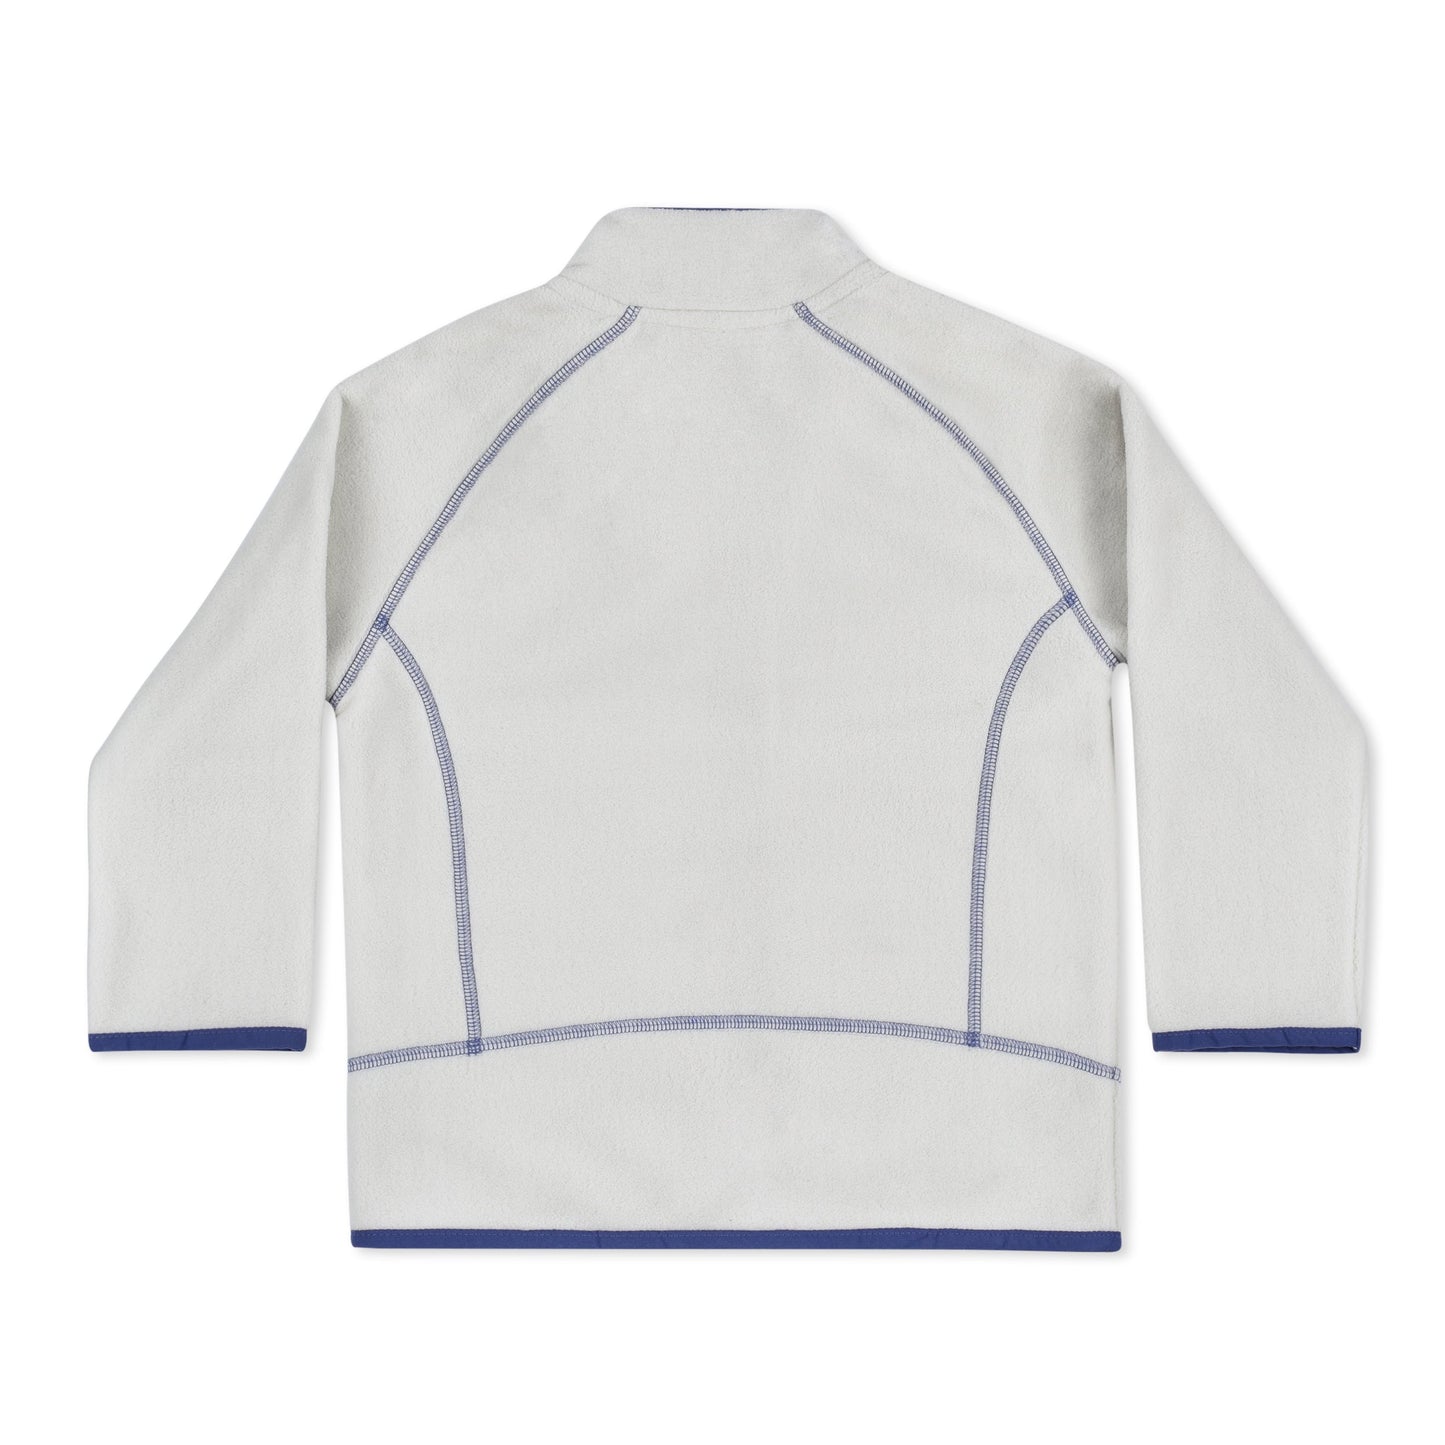 Oakiwear Kids Fleece Jacket 200 Series Polartec®, Oatmeal White Warm Mid Layer